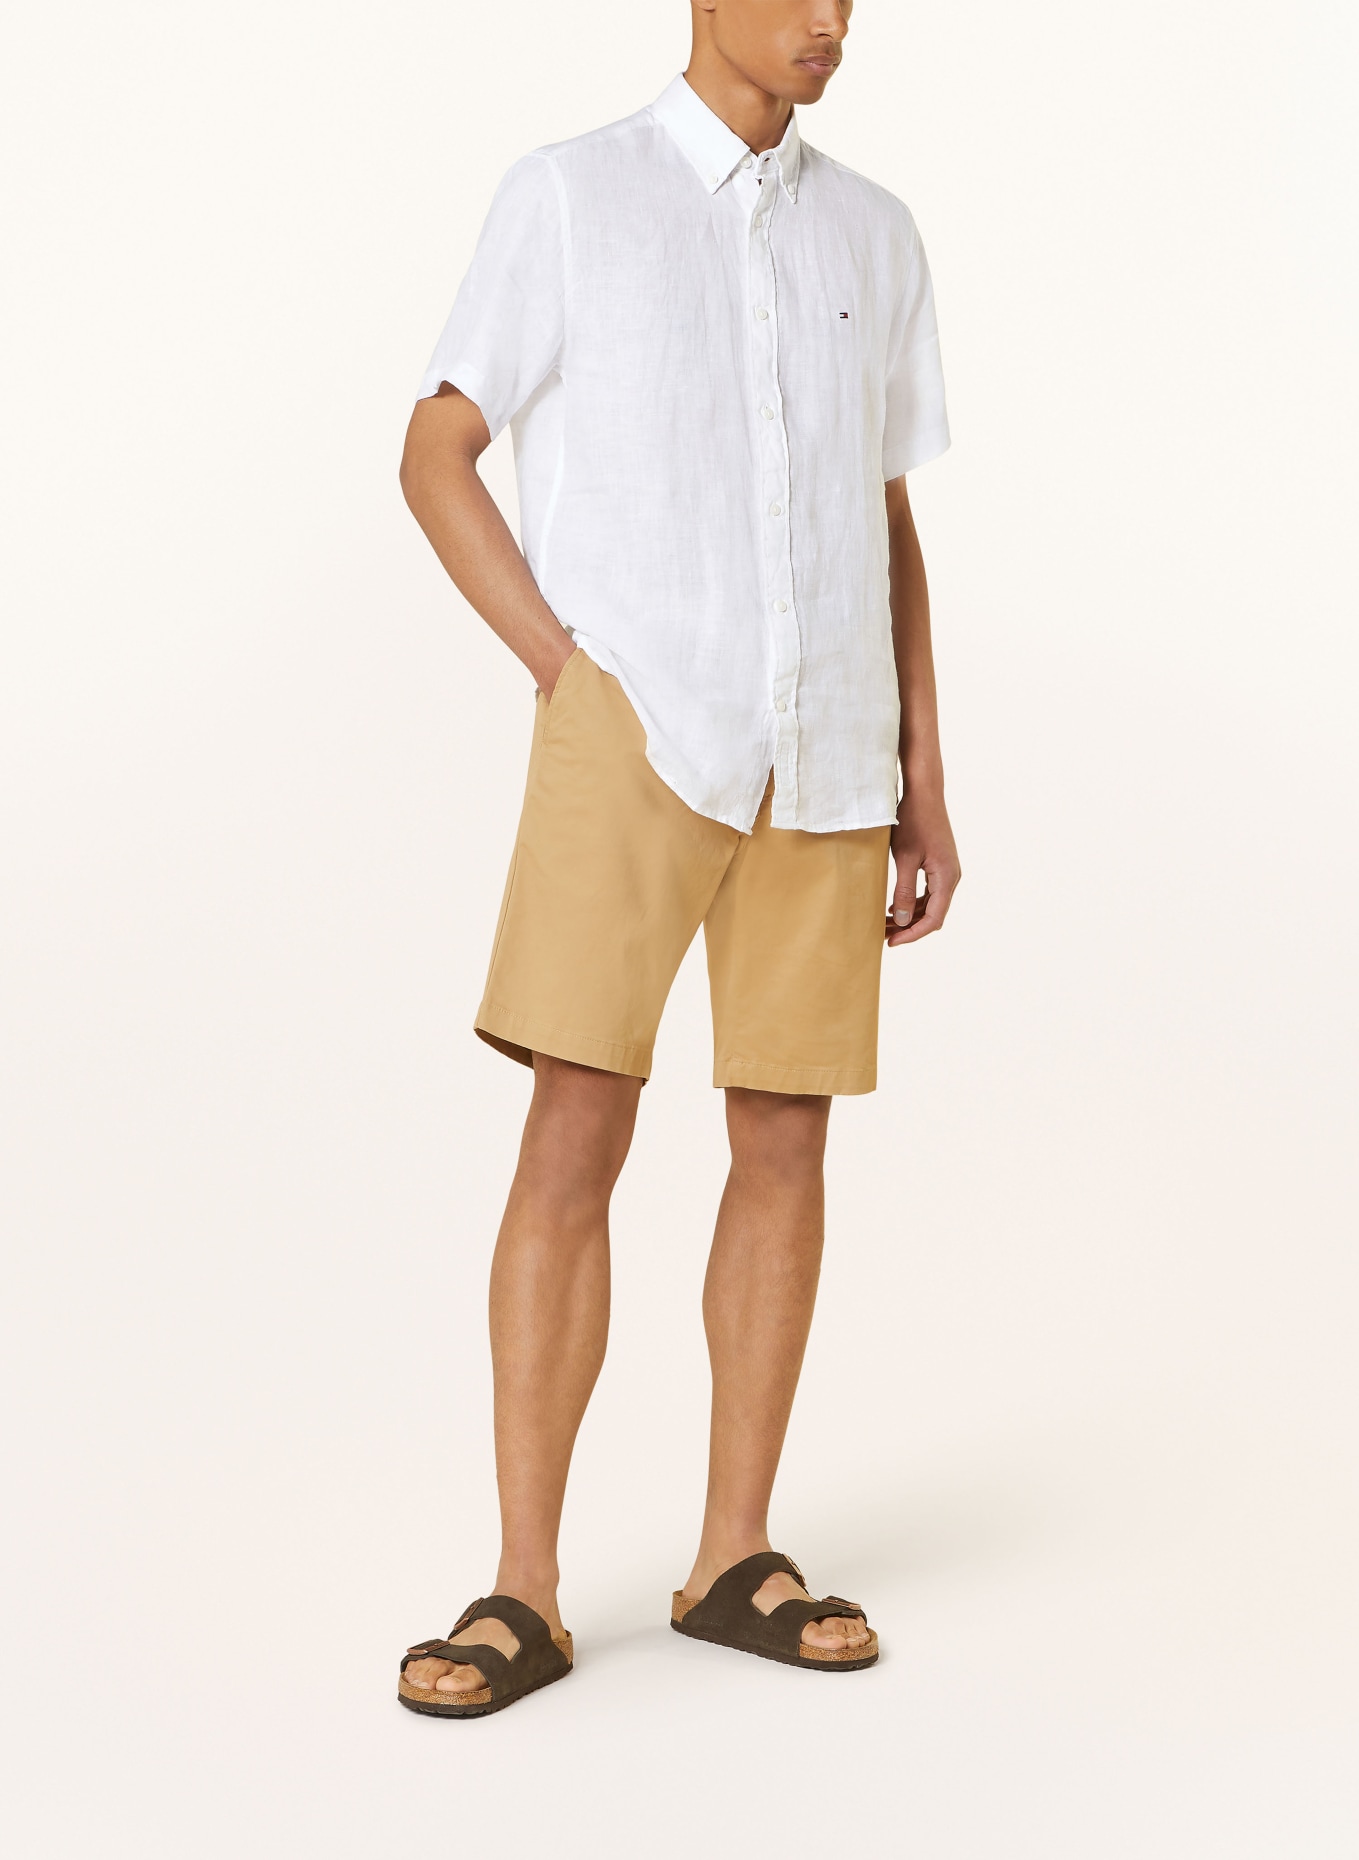 TOMMY HILFIGER Short sleeve shirt regular fit made of linen, Color: WHITE (Image 2)